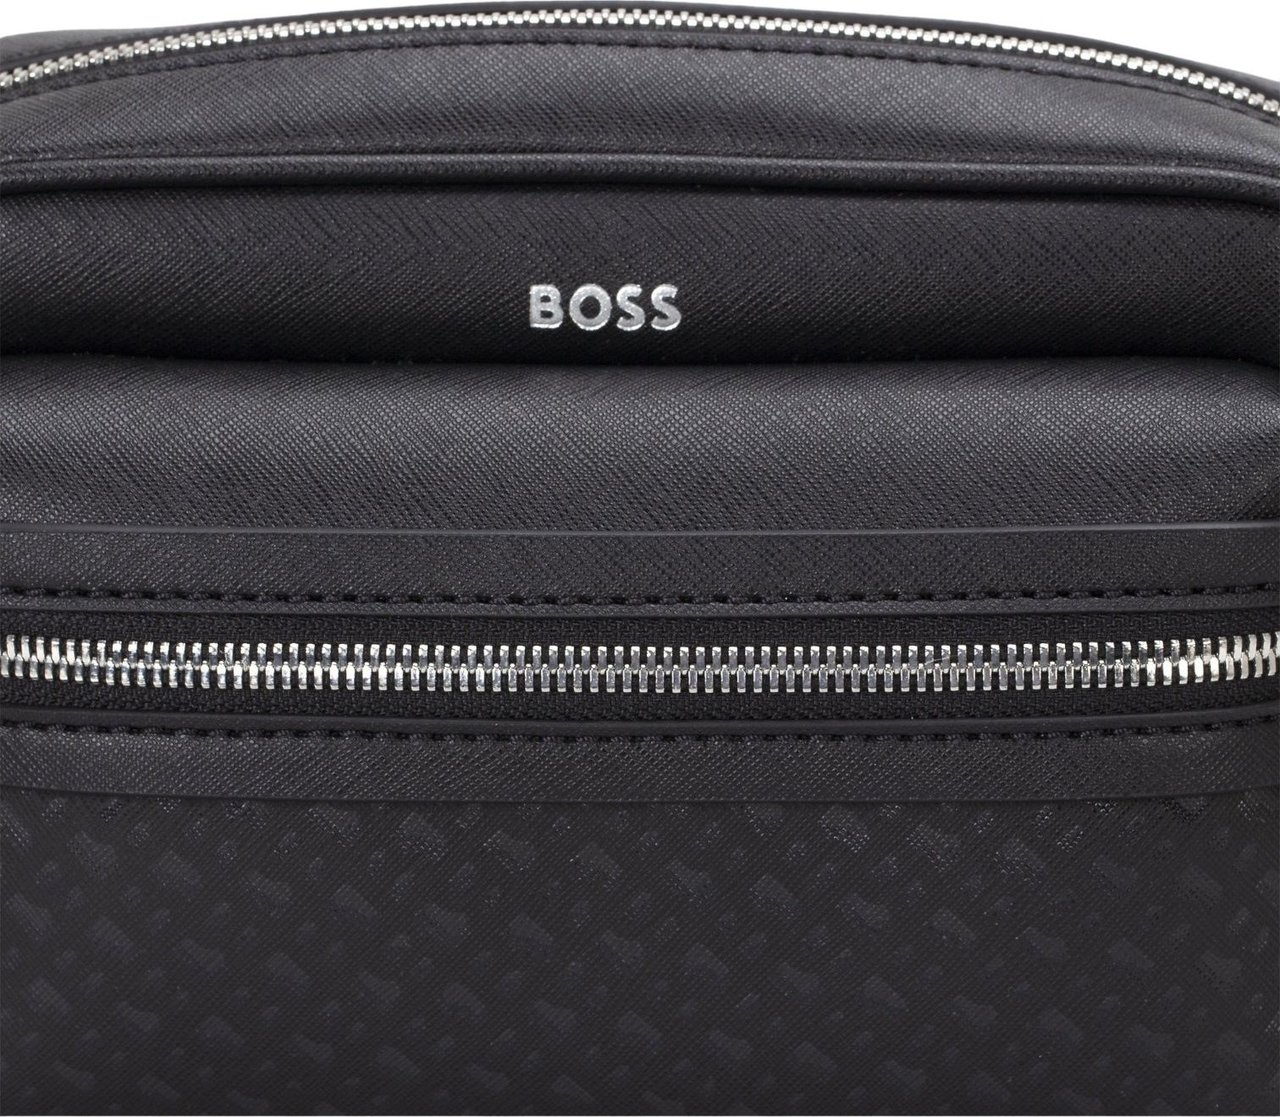 Hugo Boss Boss Heren Tas Zwart 50516765/001 ZAIR Zwart